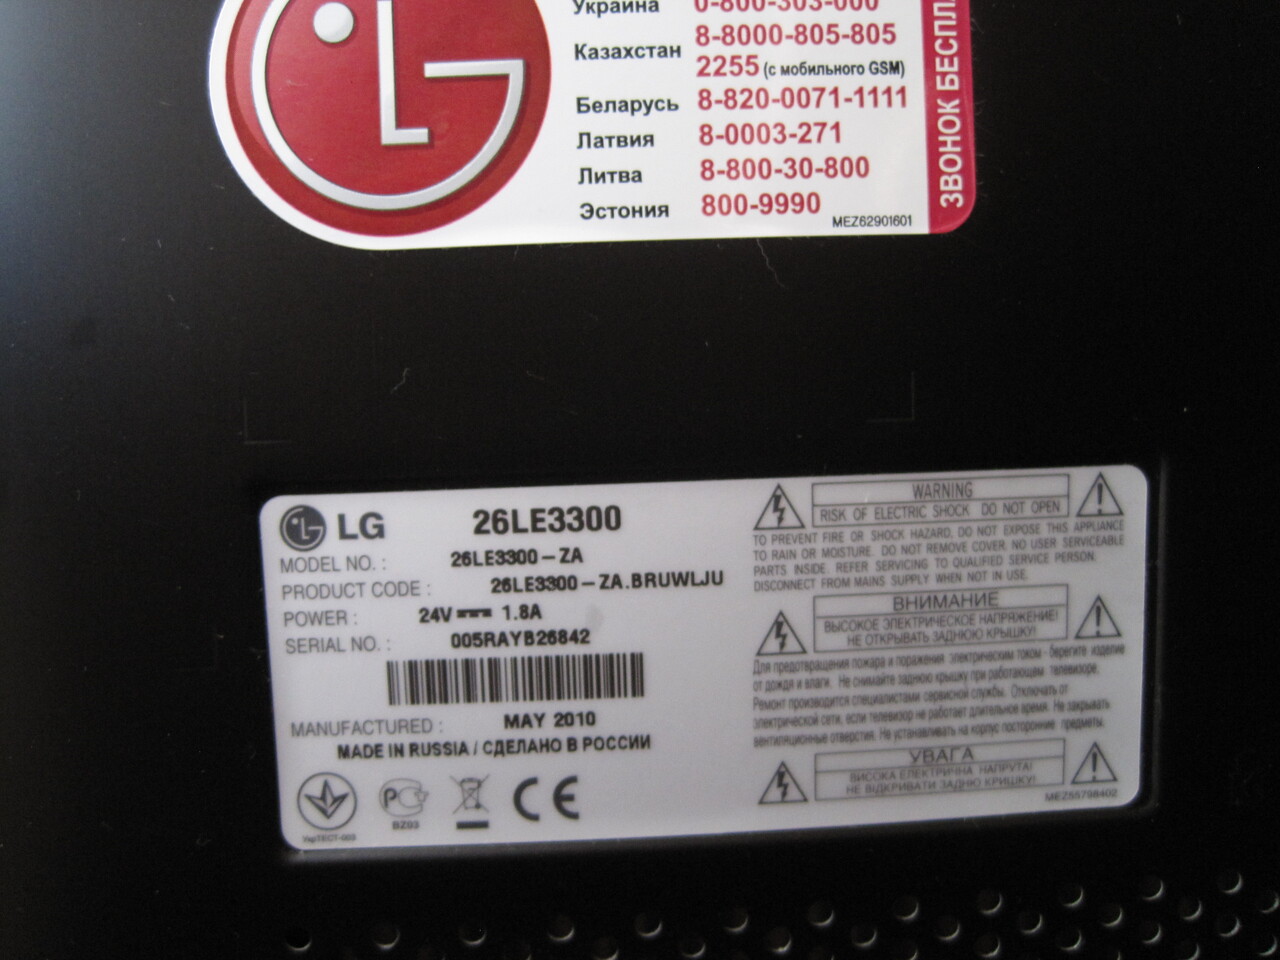 Телевизор lg 26. Телевизор LG 32le3300. Телевизор LG 26le3300-za. LG 26le3300 схема. LG 26.